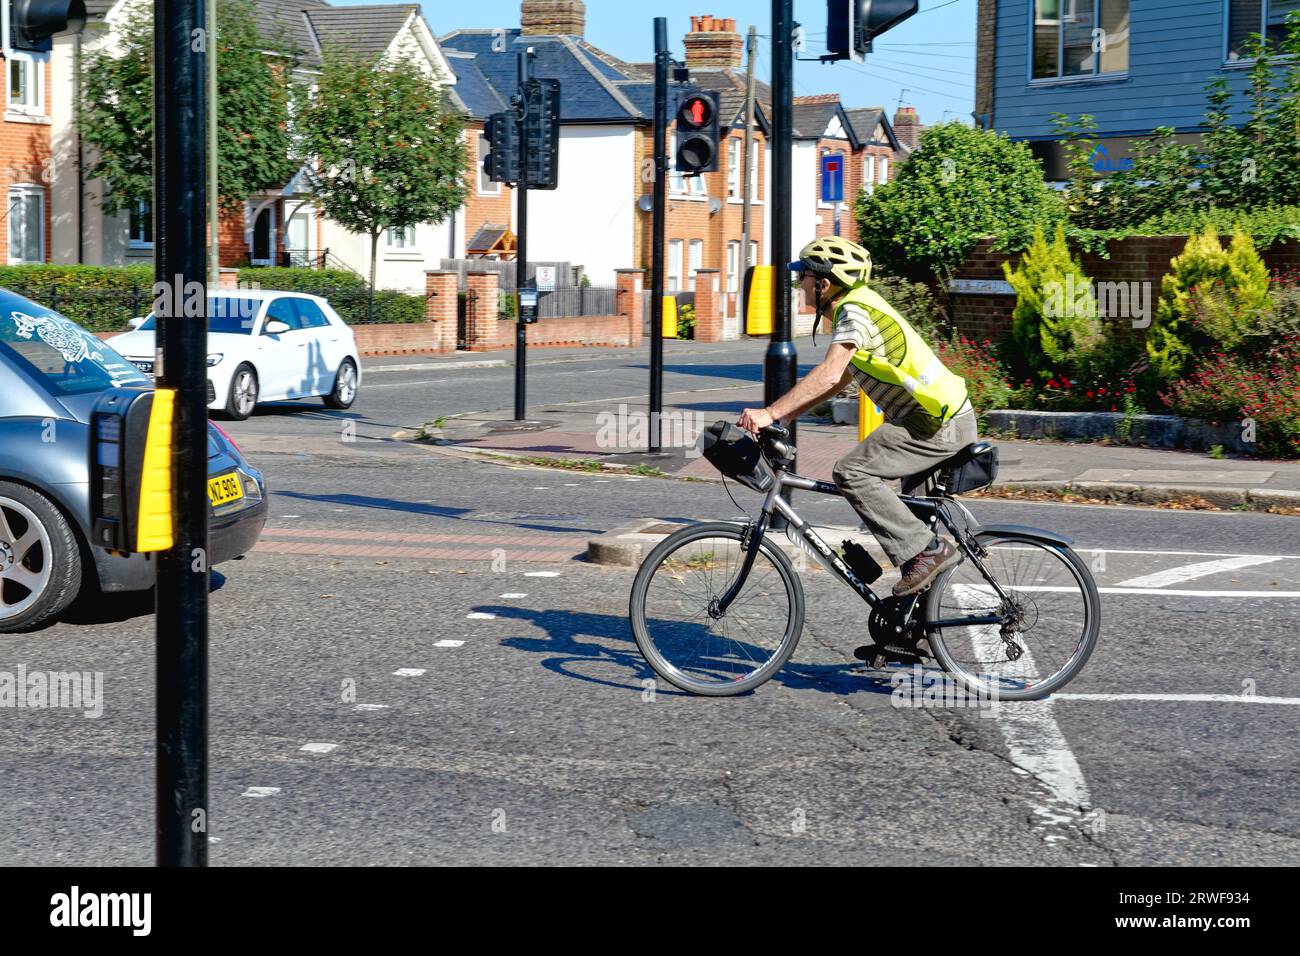 Un cycliste âgé en casque et en veste haute viz négociant la circulation à un carrefour de banlieue, Shepperton Surrey Angleterre Royaume-Uni Banque D'Images